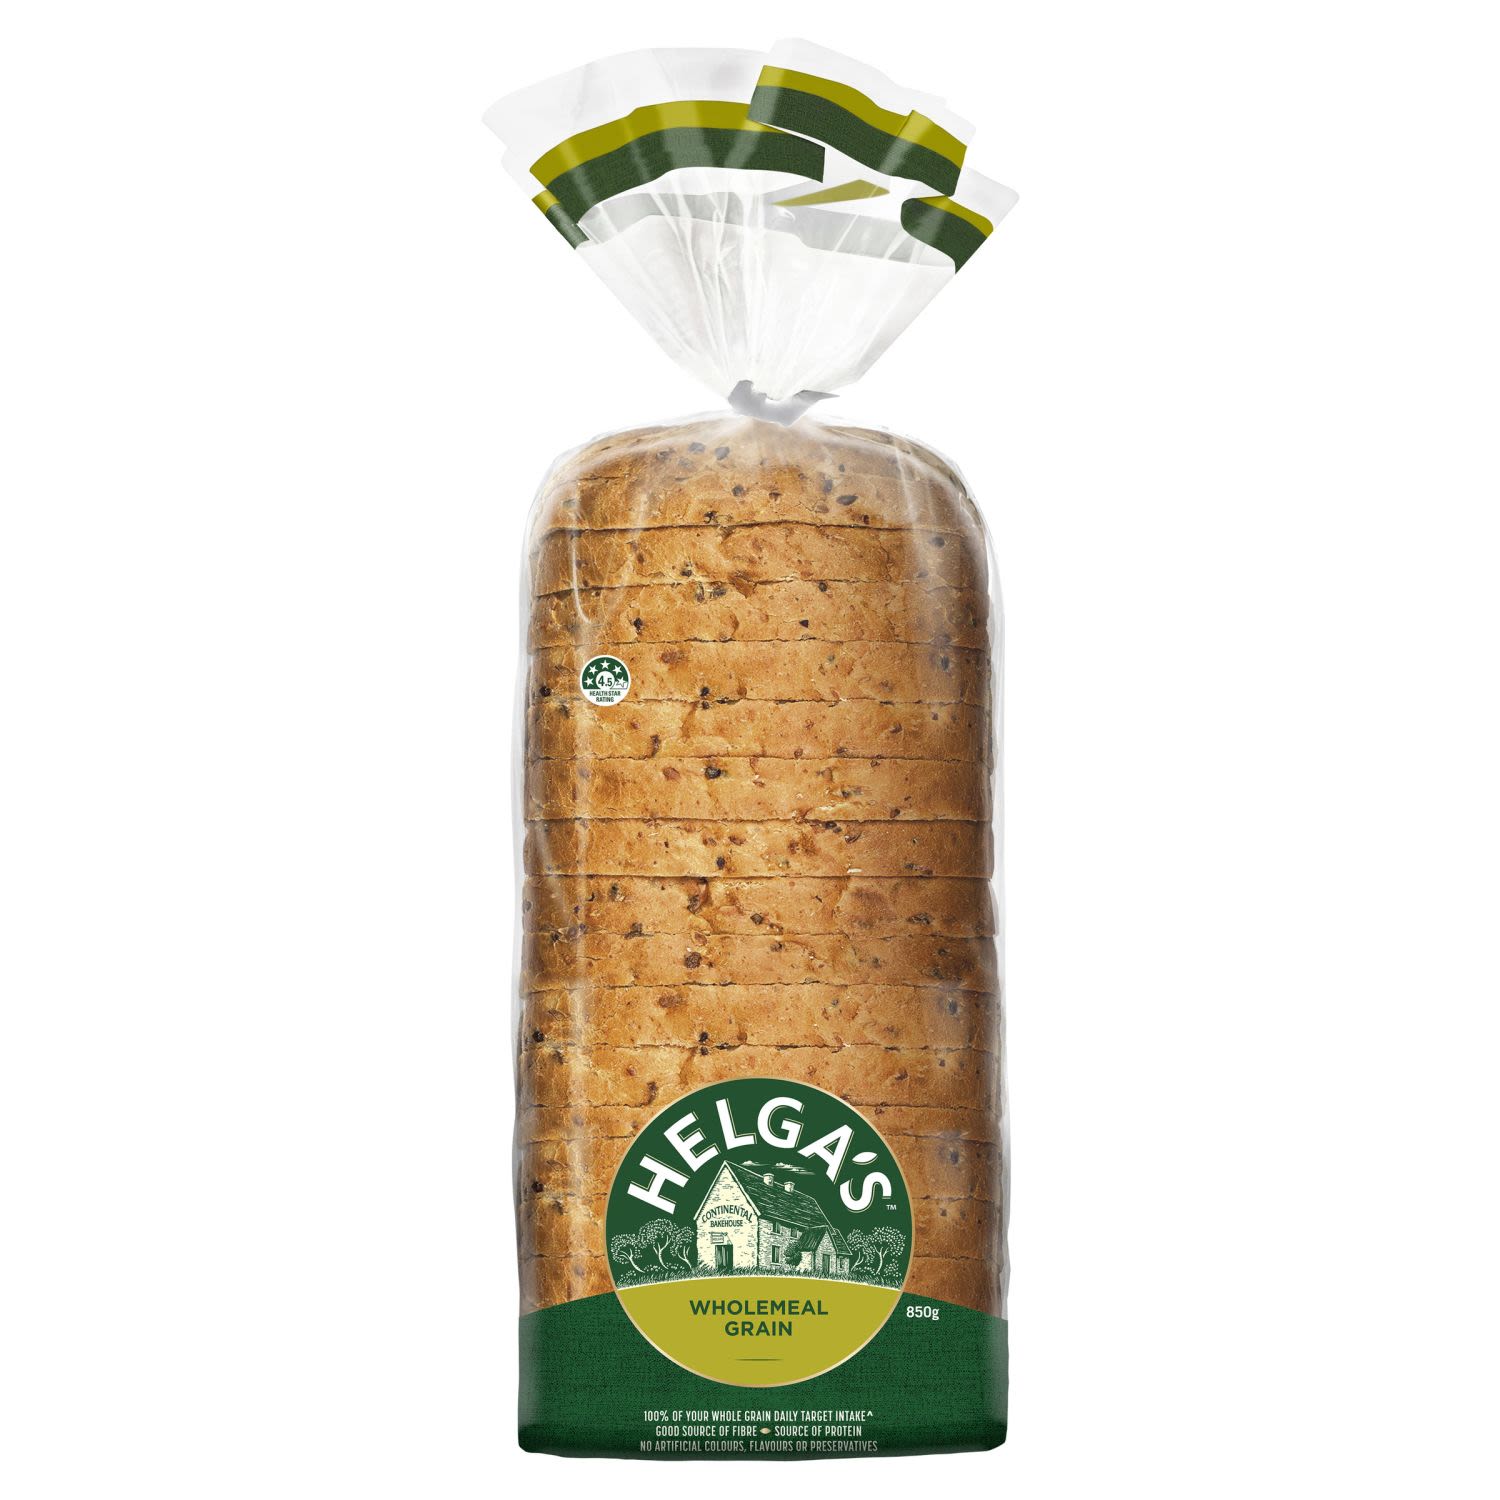 Helga's Wholemeal Grain Bread, 850 Gram